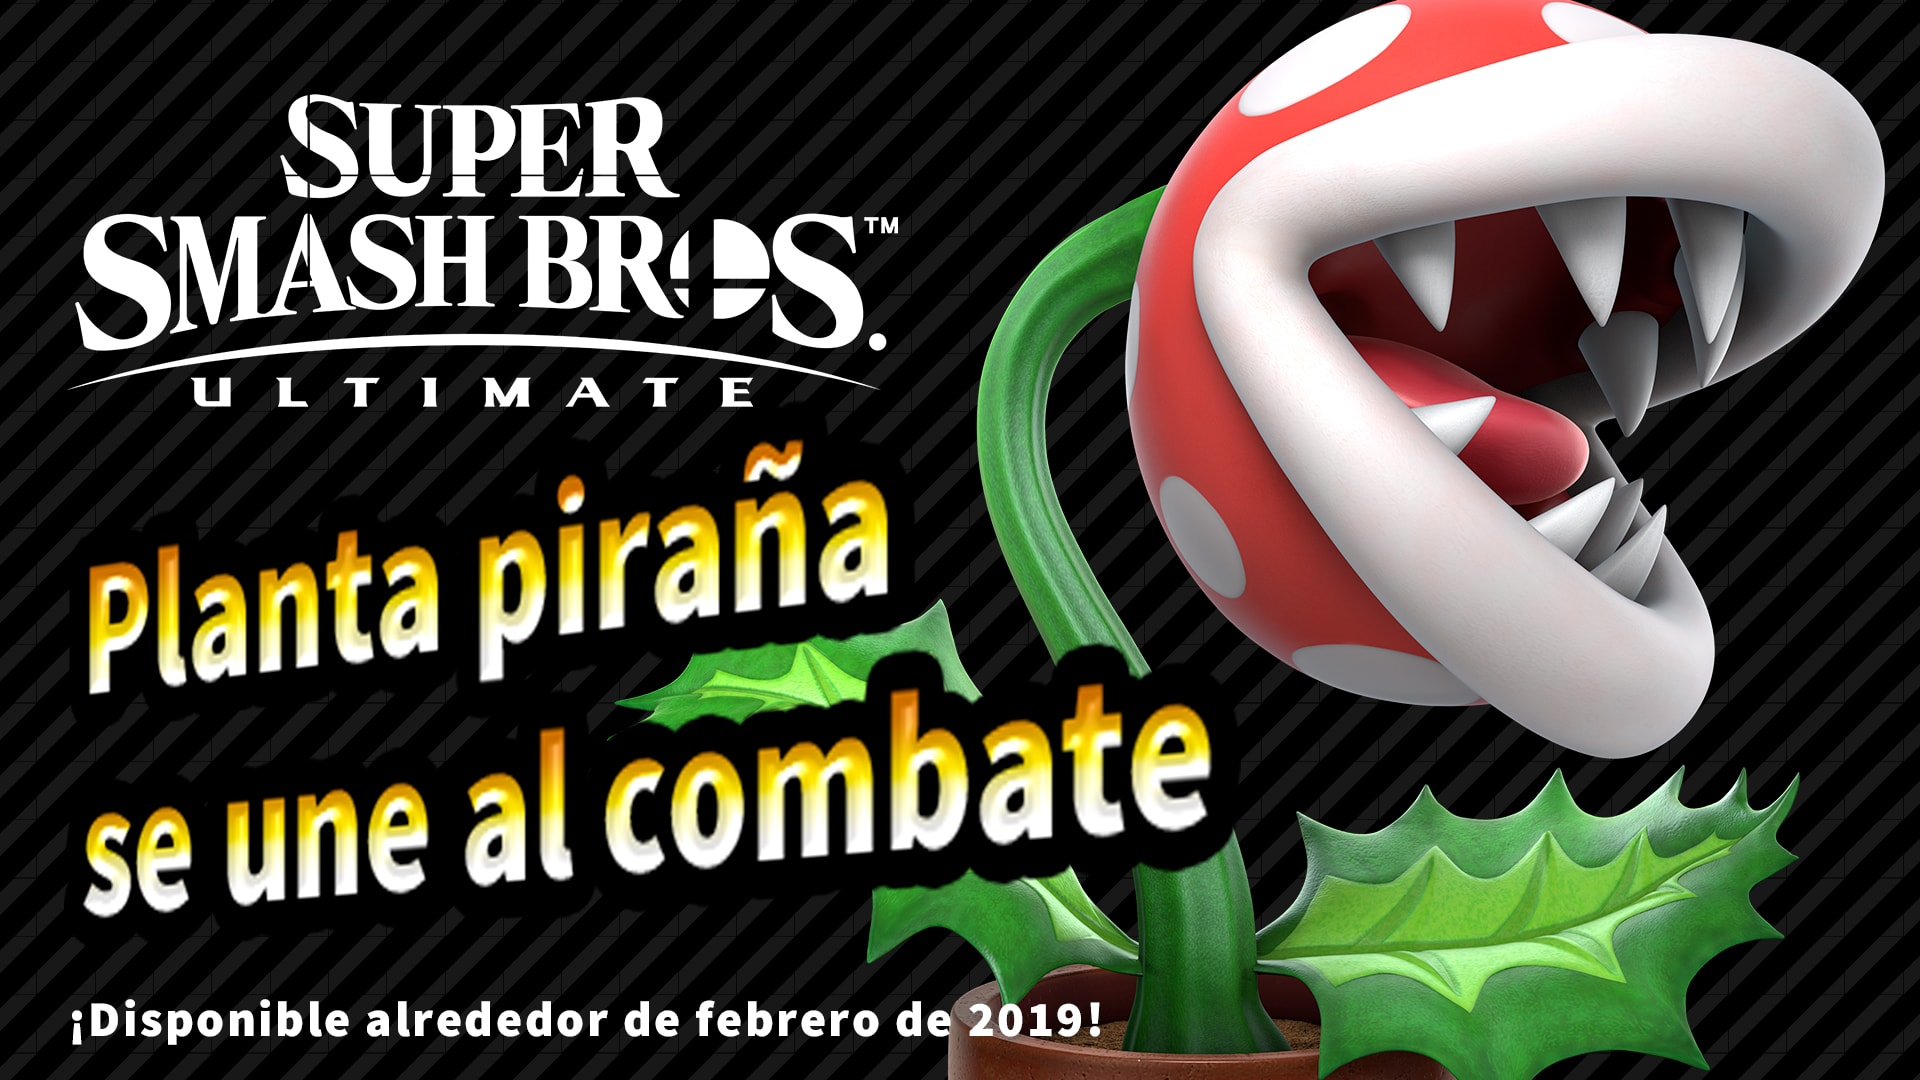 Super Smash Bros.™ Ultimate: Piranha Plant Standalone Fighter 